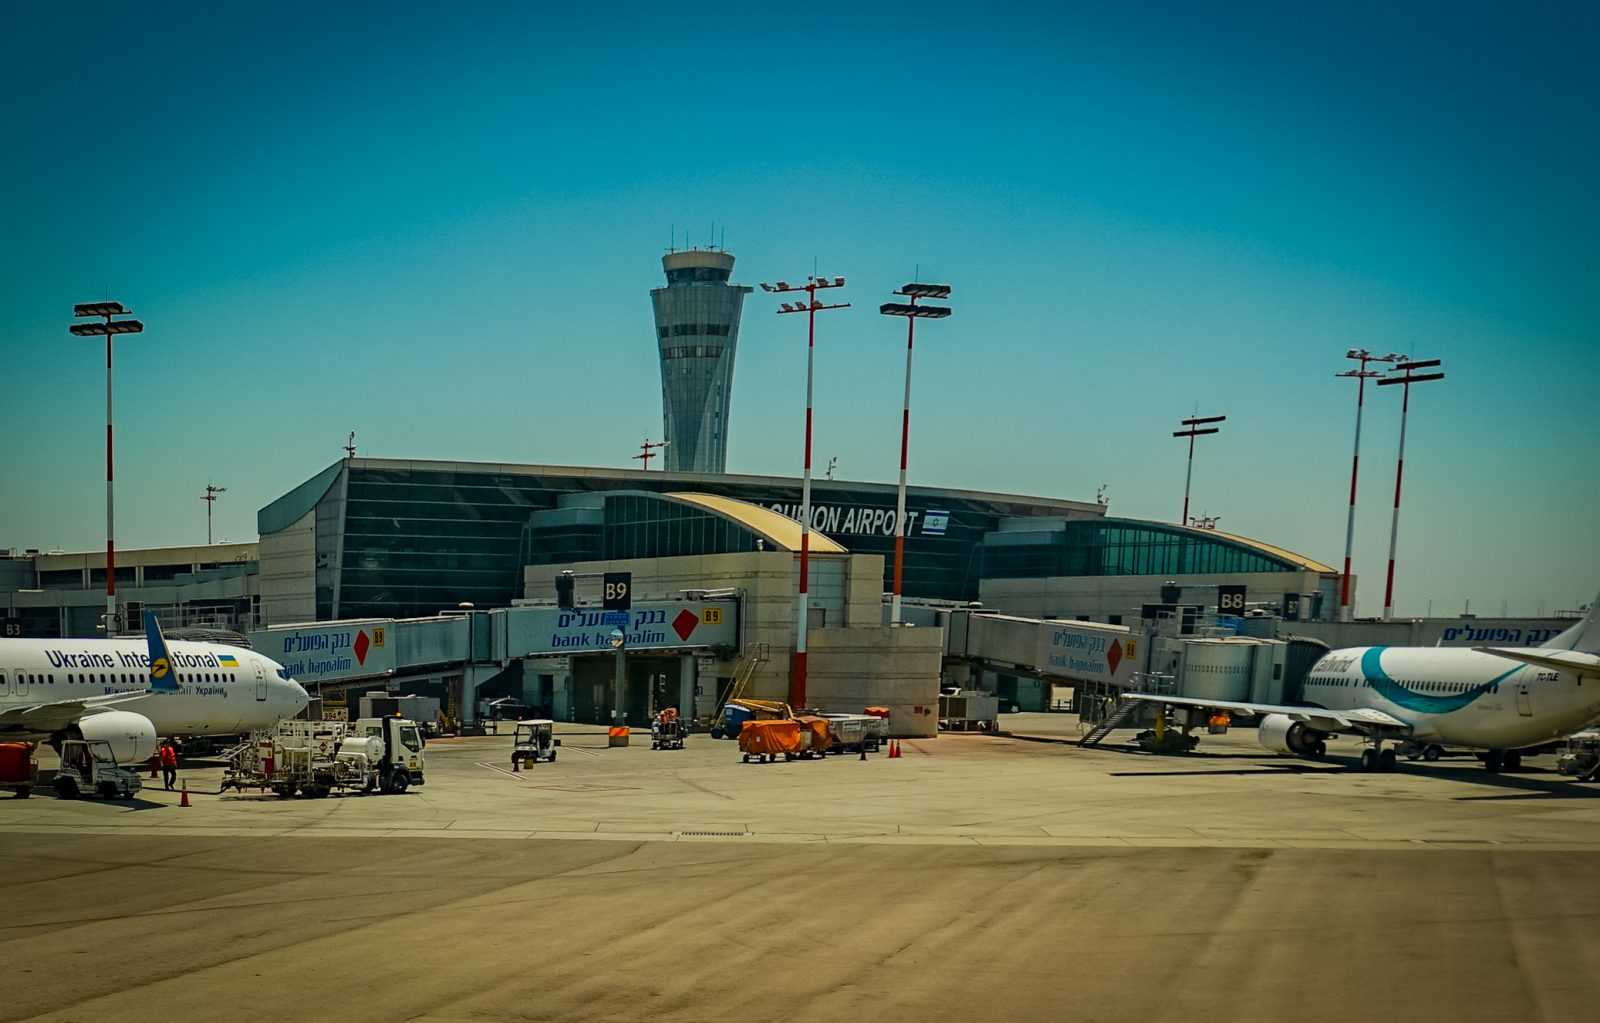 Аэропорт «бен гурион», тель-авив. онлайн-табло прилетов и вылетов, сайт, расписание рейсов, терминалы, отели рядом, как добраться на туристер.ру